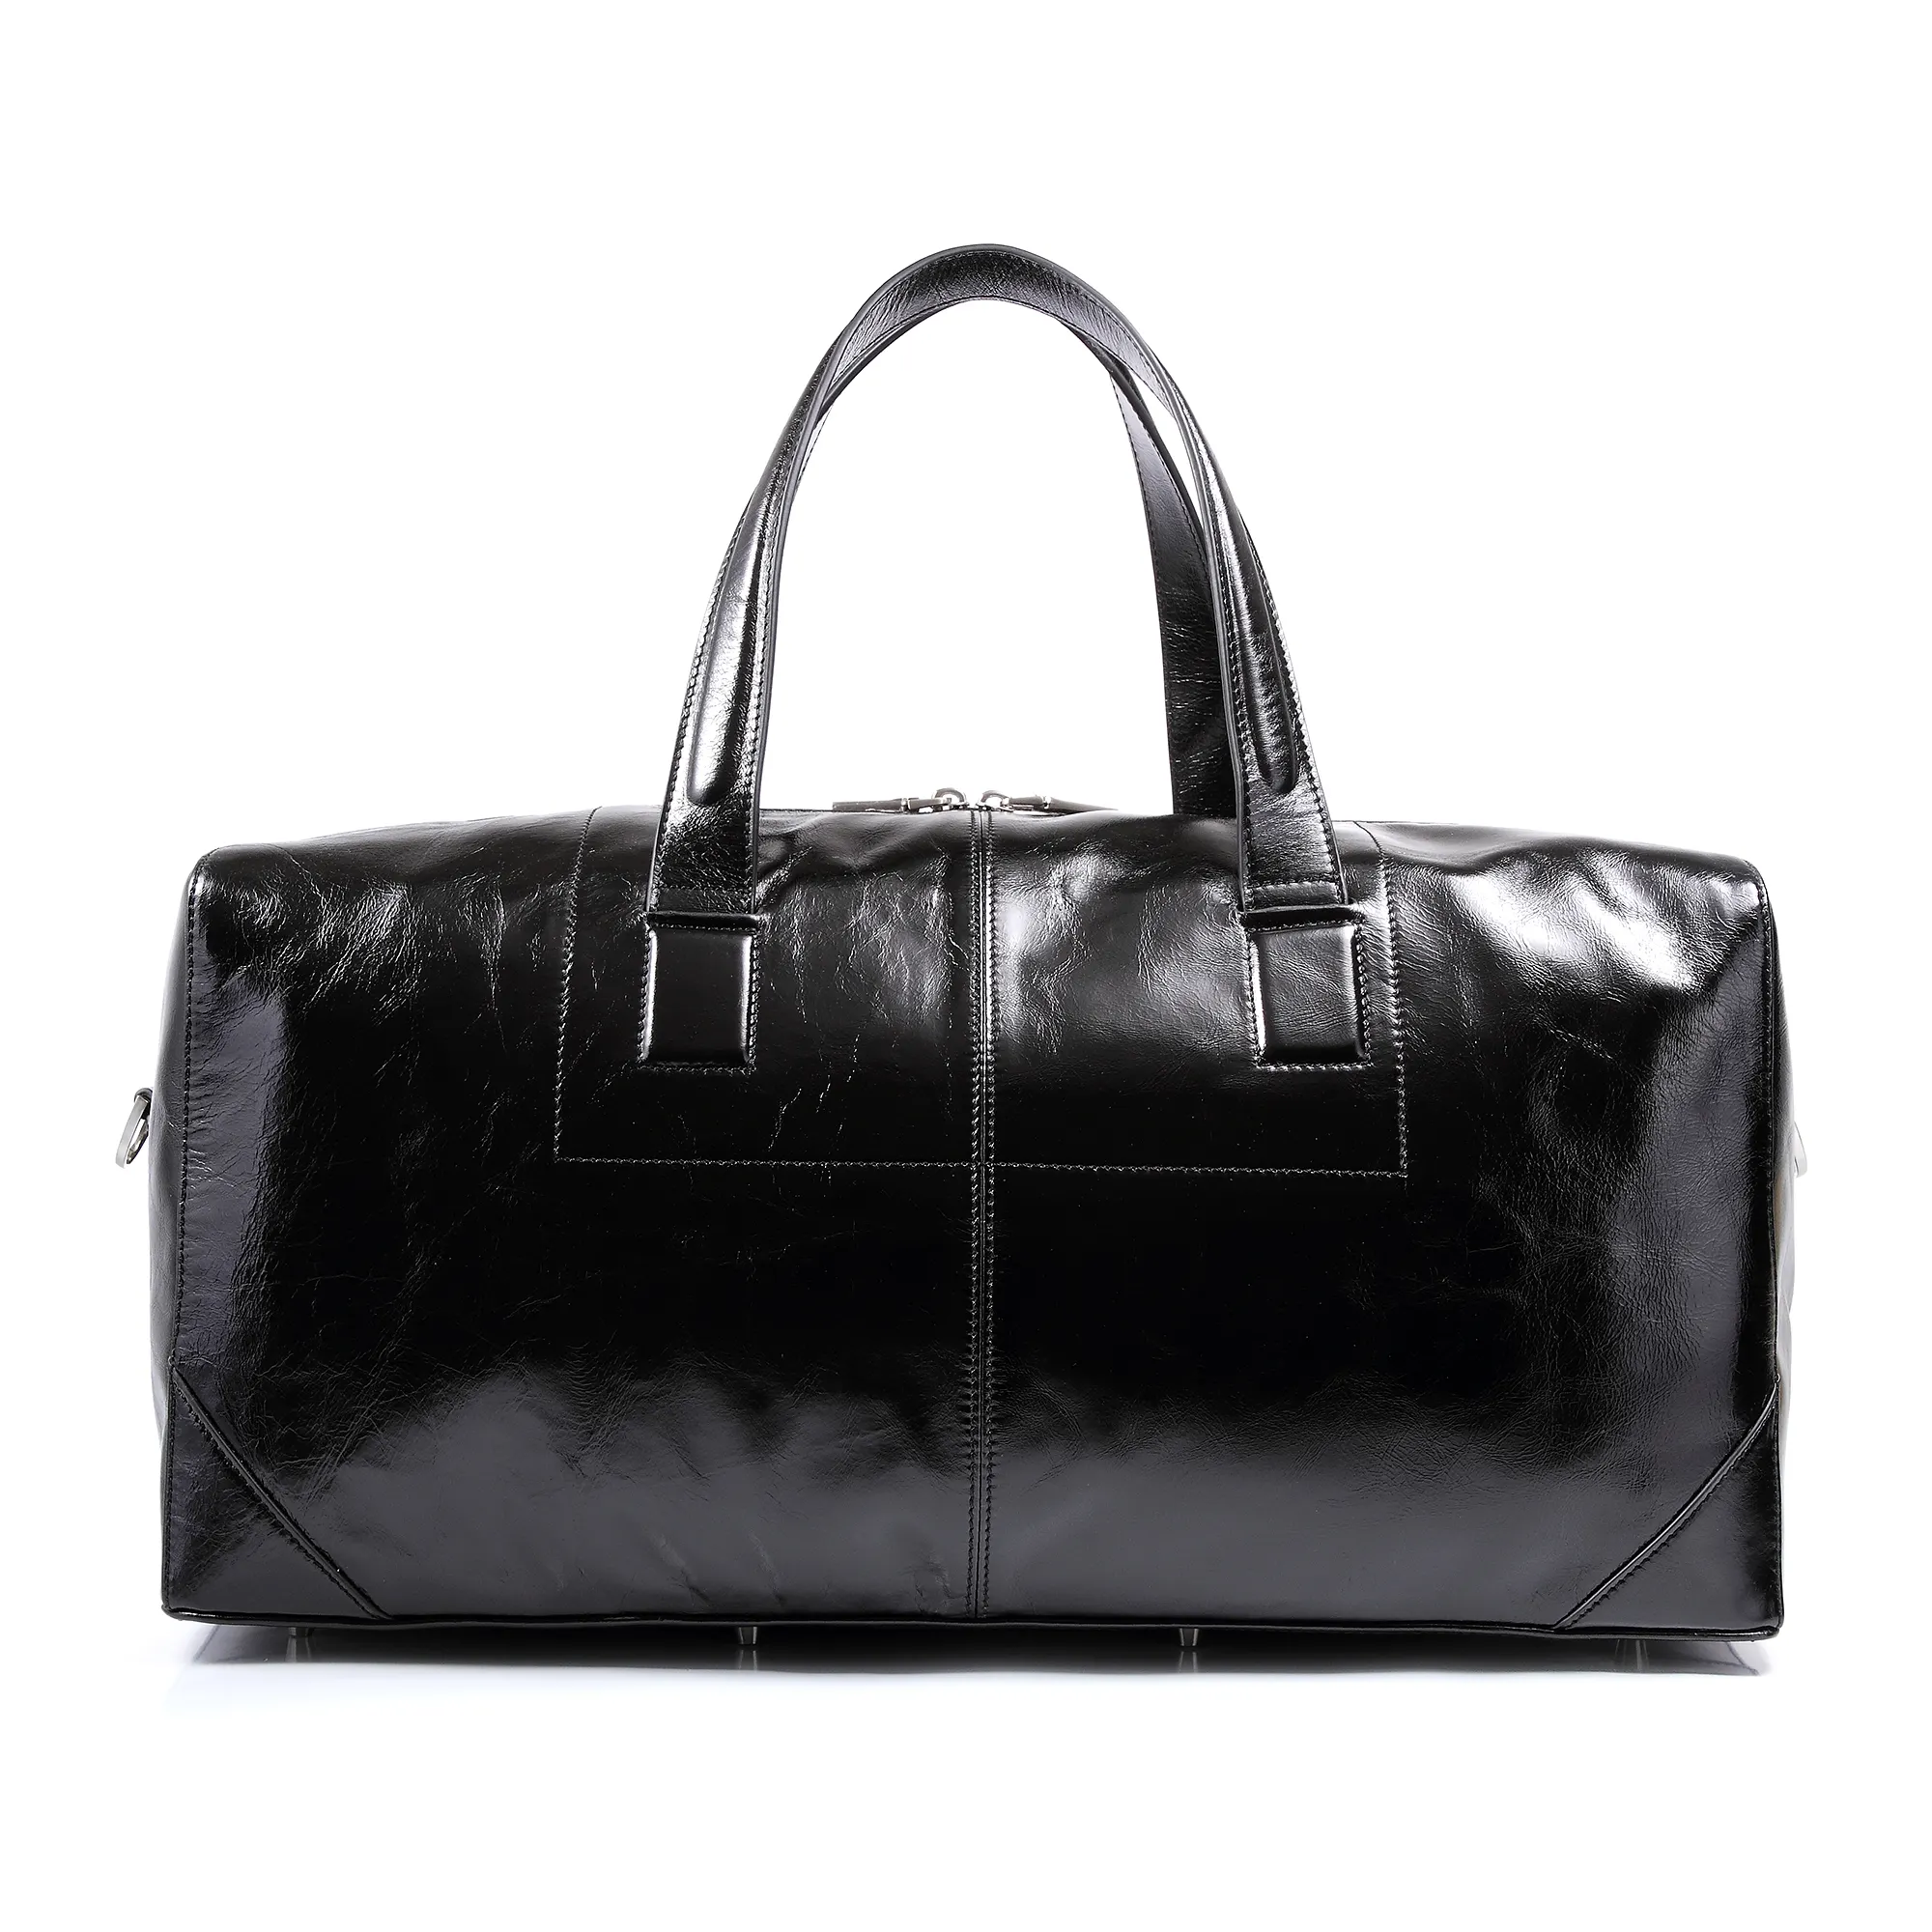 Gionar Zwart Lederen Bagage Handtas Vintage Leather Travel Mens Luxe Plunjezak Voor Mannen Online Winkelen Uk